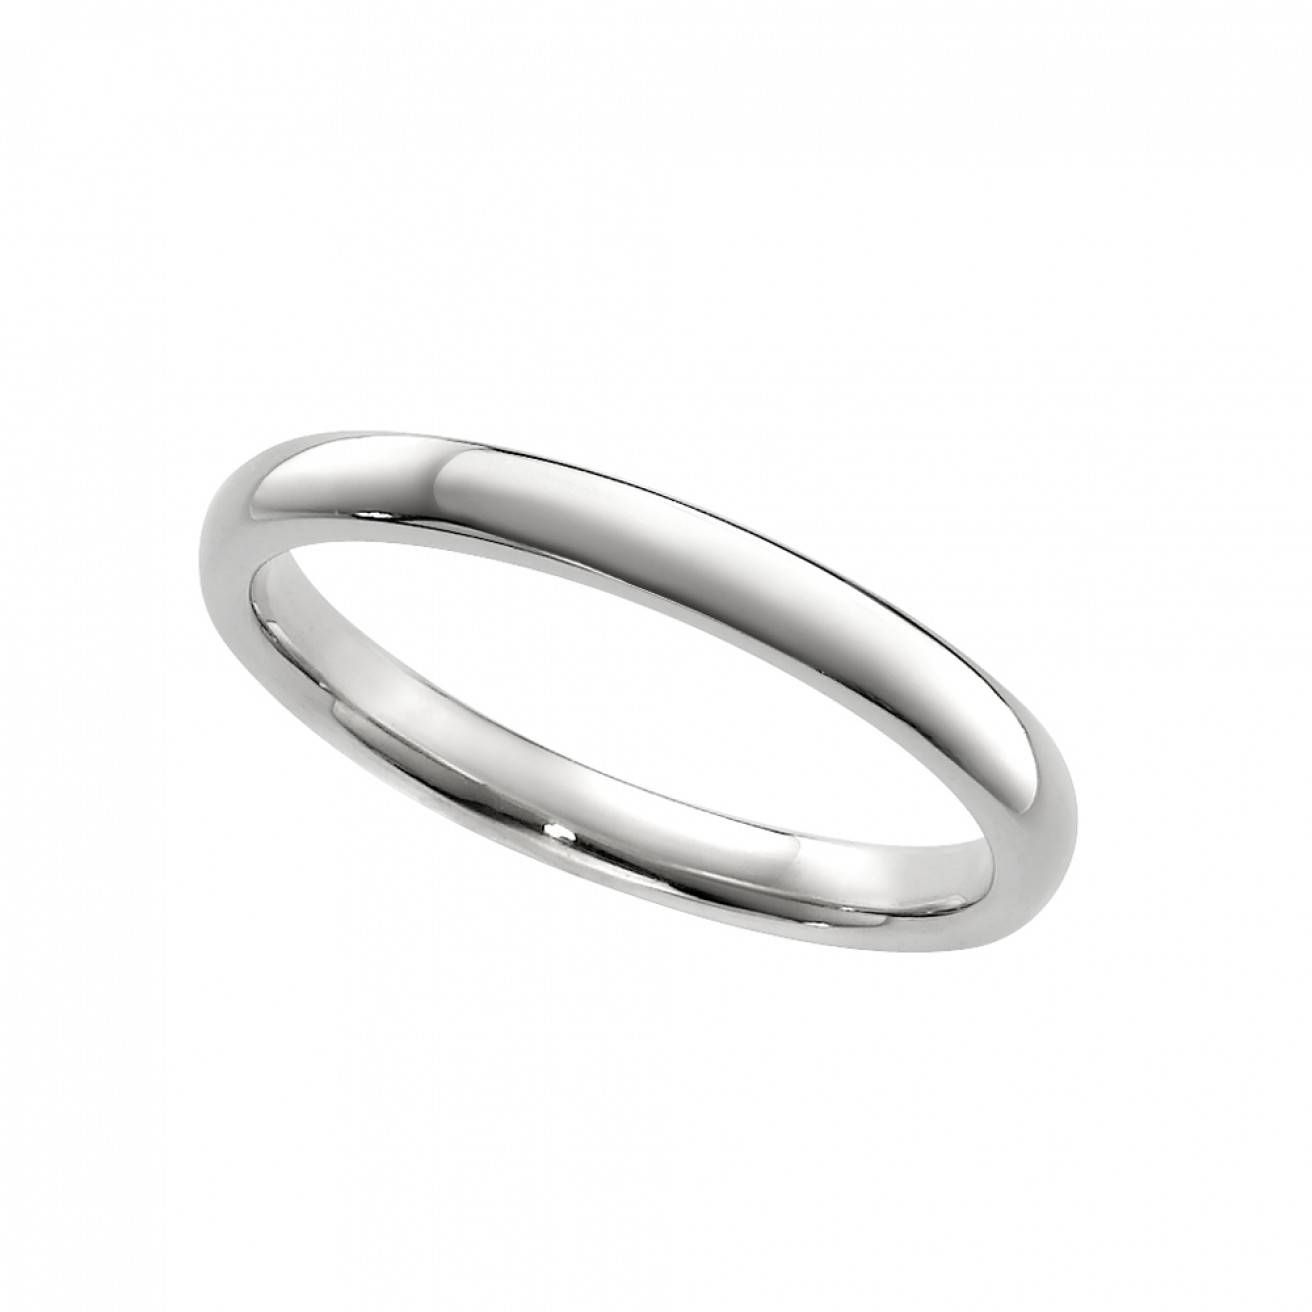 Buy White Gold Wedding Rings Online – Fraser Hart Regarding White And Gold Wedding Rings (View 4 of 15)